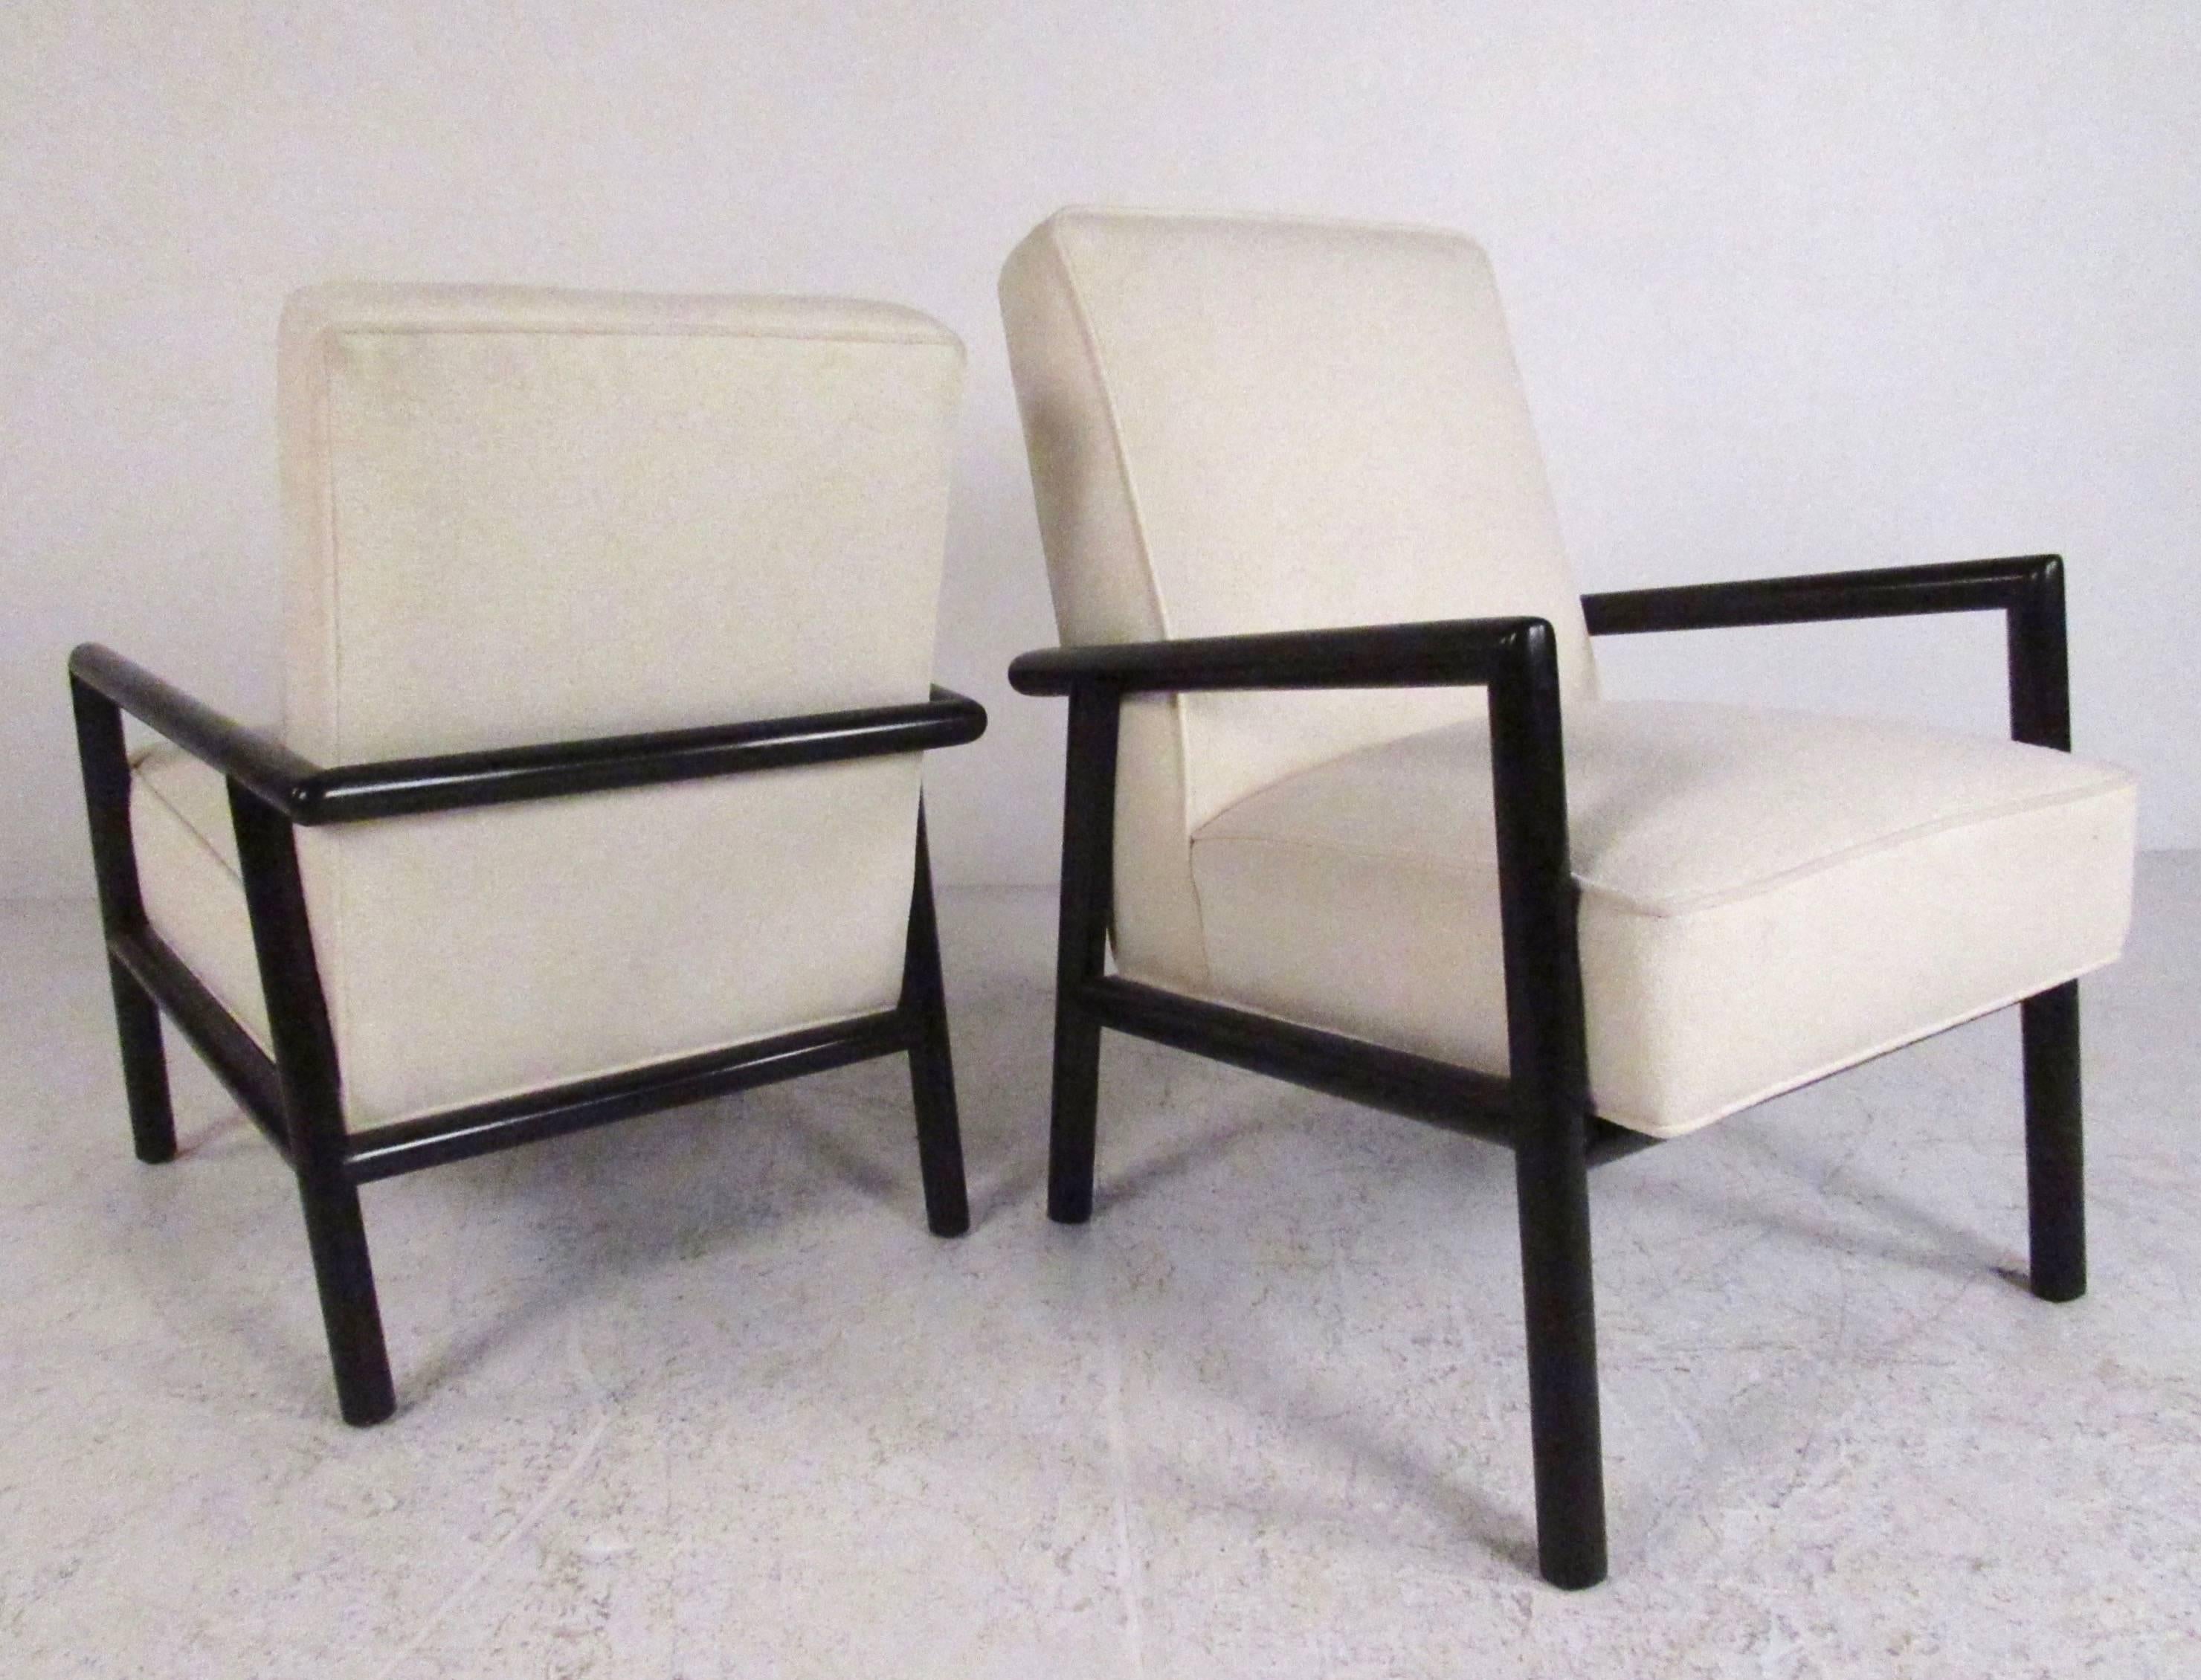 Dieses einzigartige Paar von Stühlen für Sie und Ihn verfügt über gepolsterte Sitze und schlichte, aber formschöne Gestelle aus schwarzem Lack. Exquisites modernes Design von T.H. Robsjohn-Gibbings macht in jeder Sitzgruppe zu Hause oder im Büro